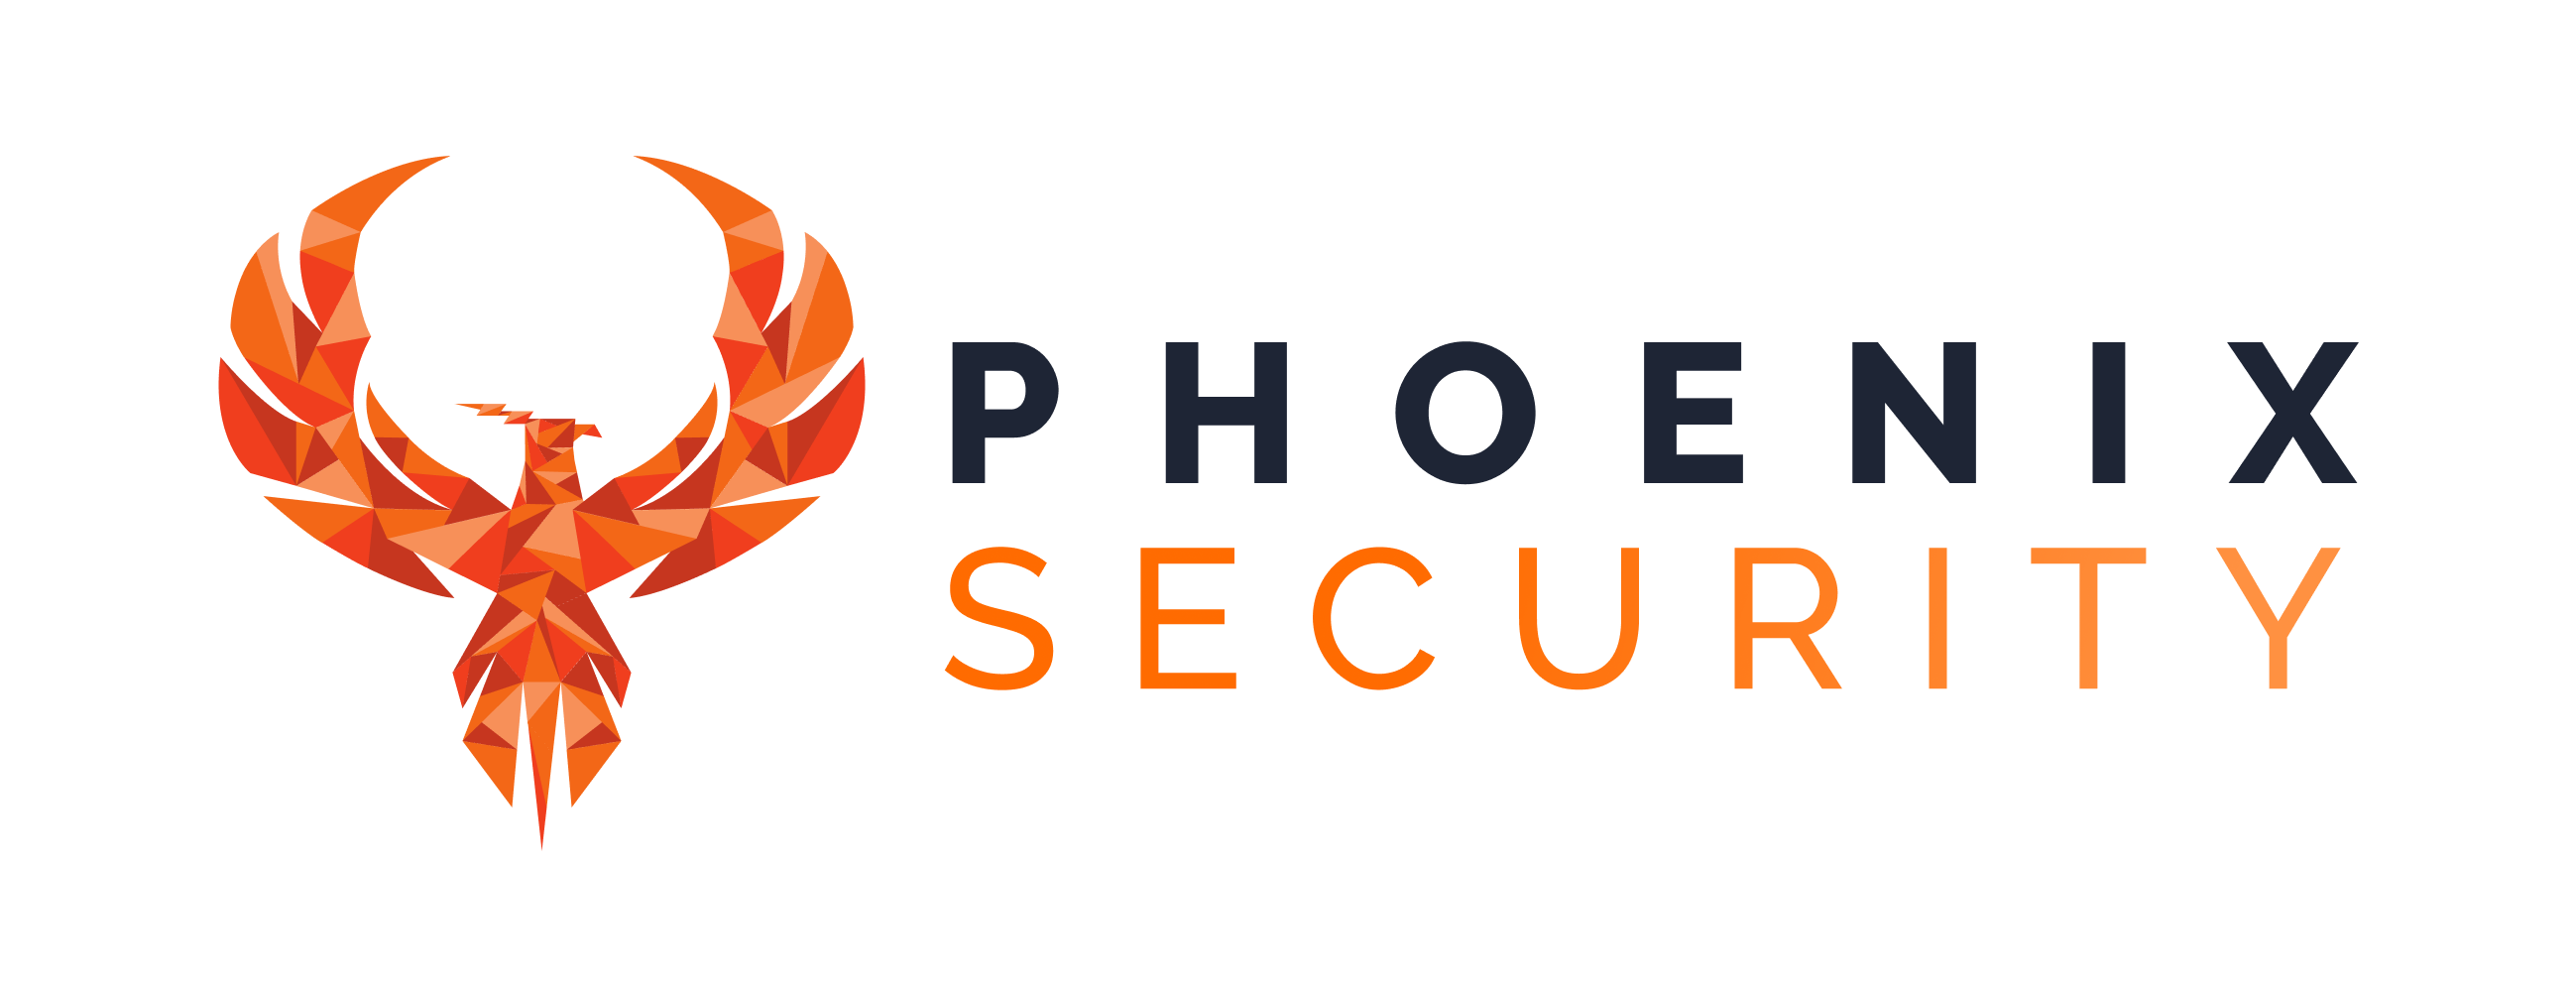 phoenixsecurity-logo